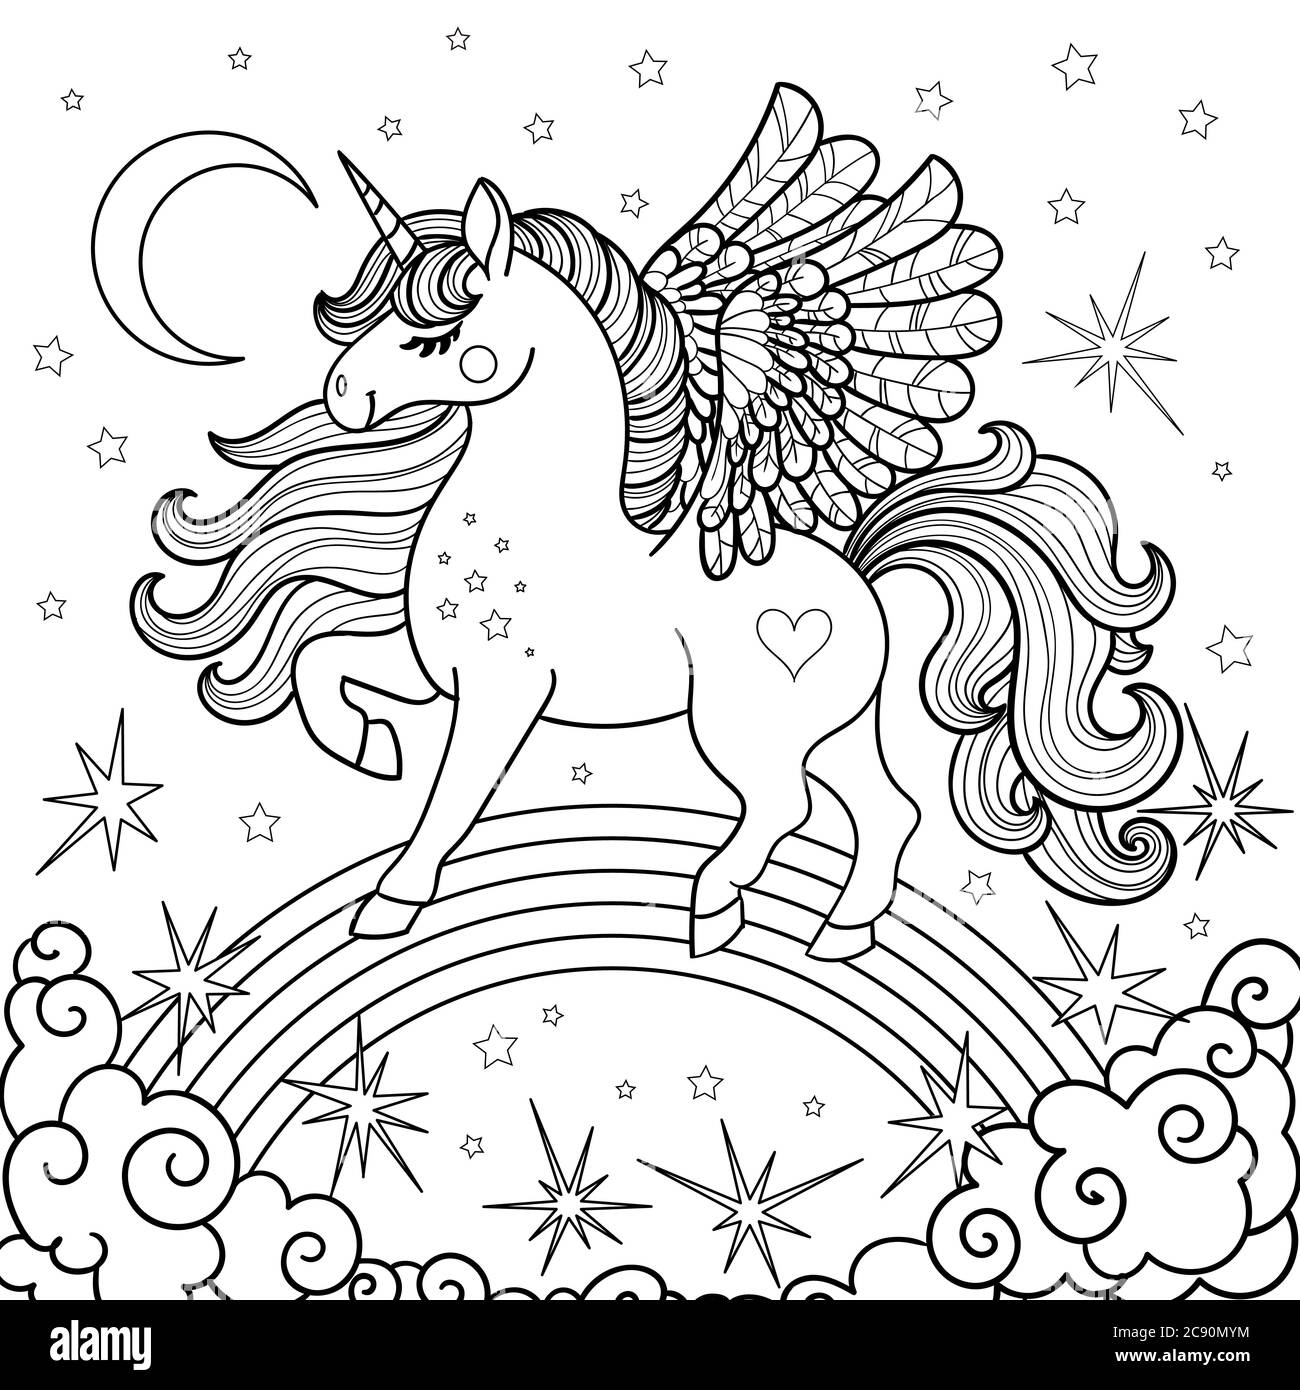 Mignon, dessin animé unicorn sur un arc-en-ciel. Noir et blanc. Pour  colorier, imprimer, poster, cartes, tatouages. Vecteur Image Vectorielle  Stock - Alamy